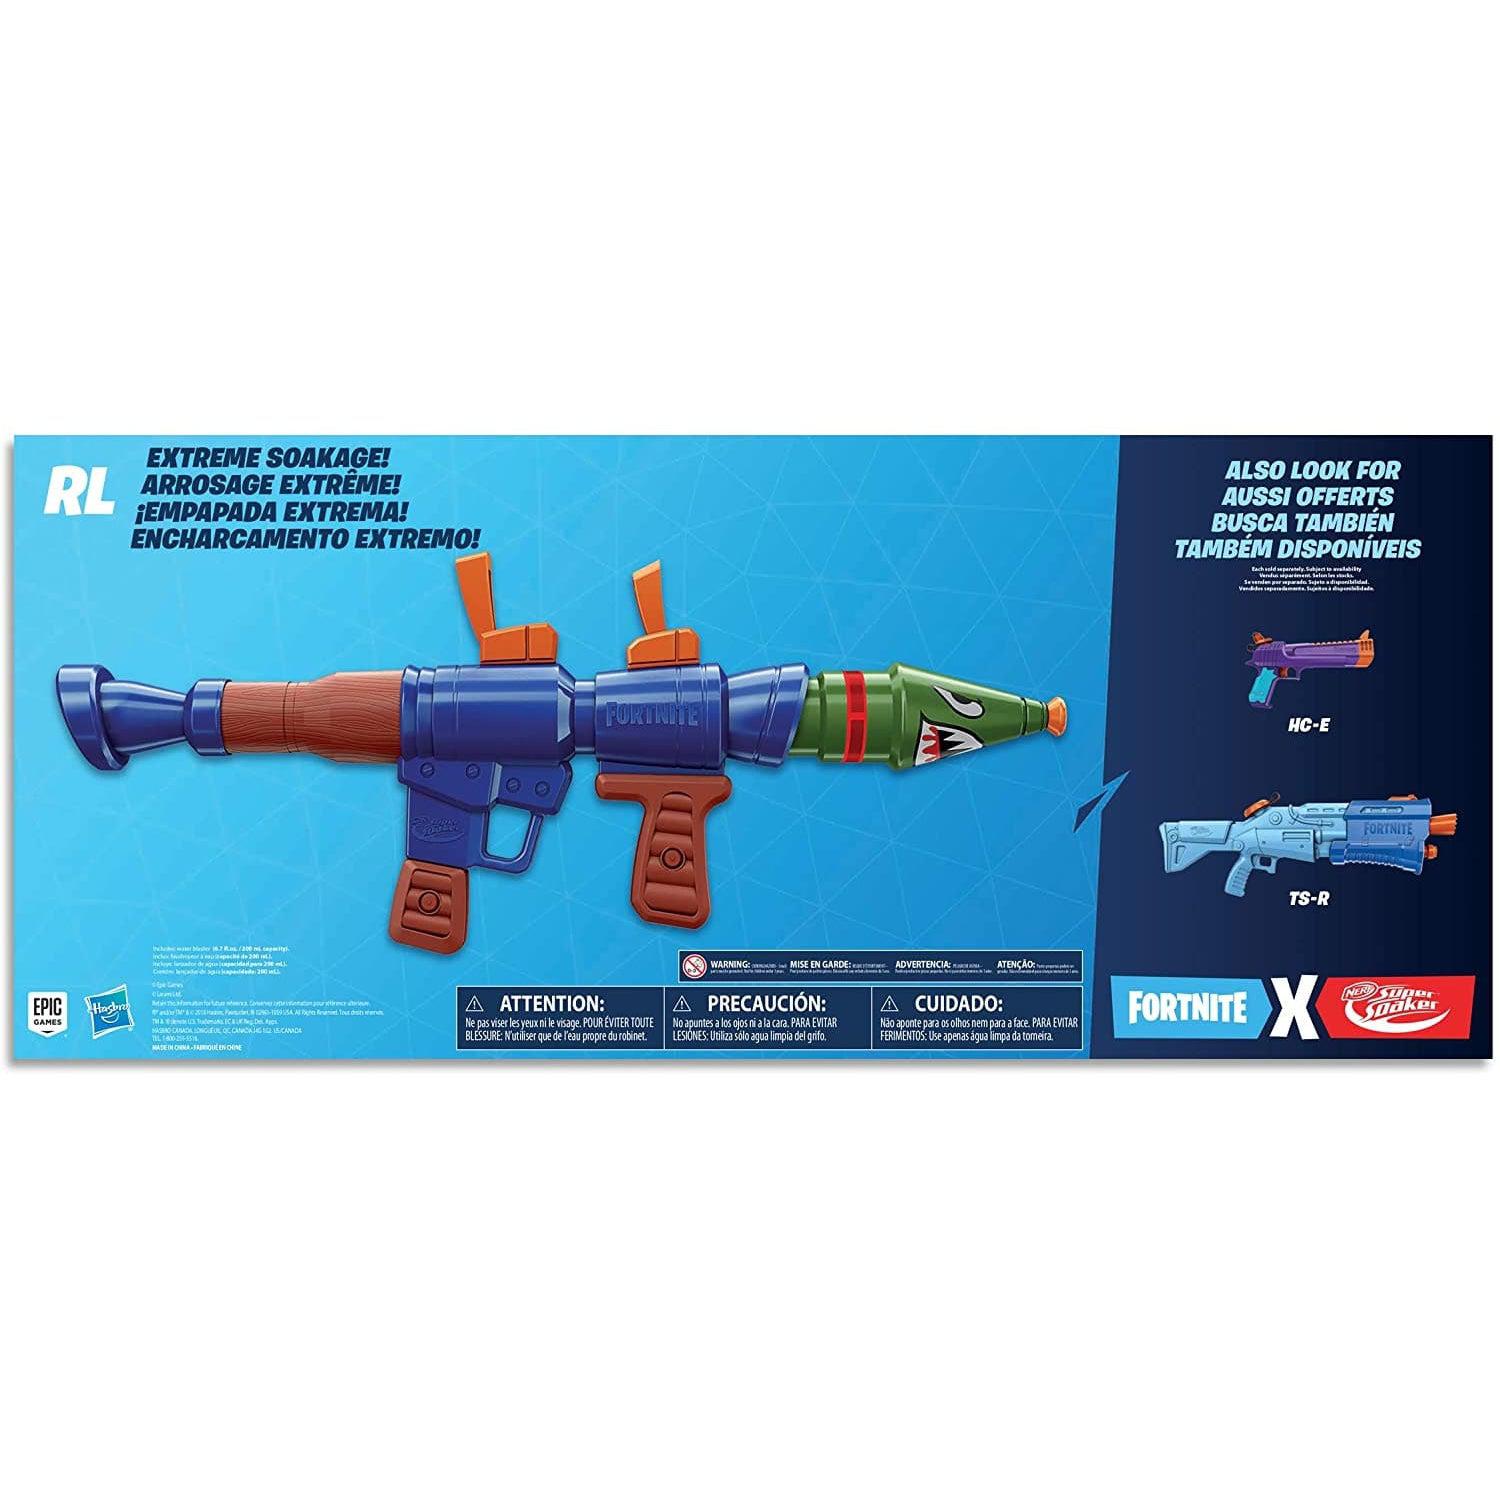 Fortnite Guns Toy, Nerf Gun Fortnite